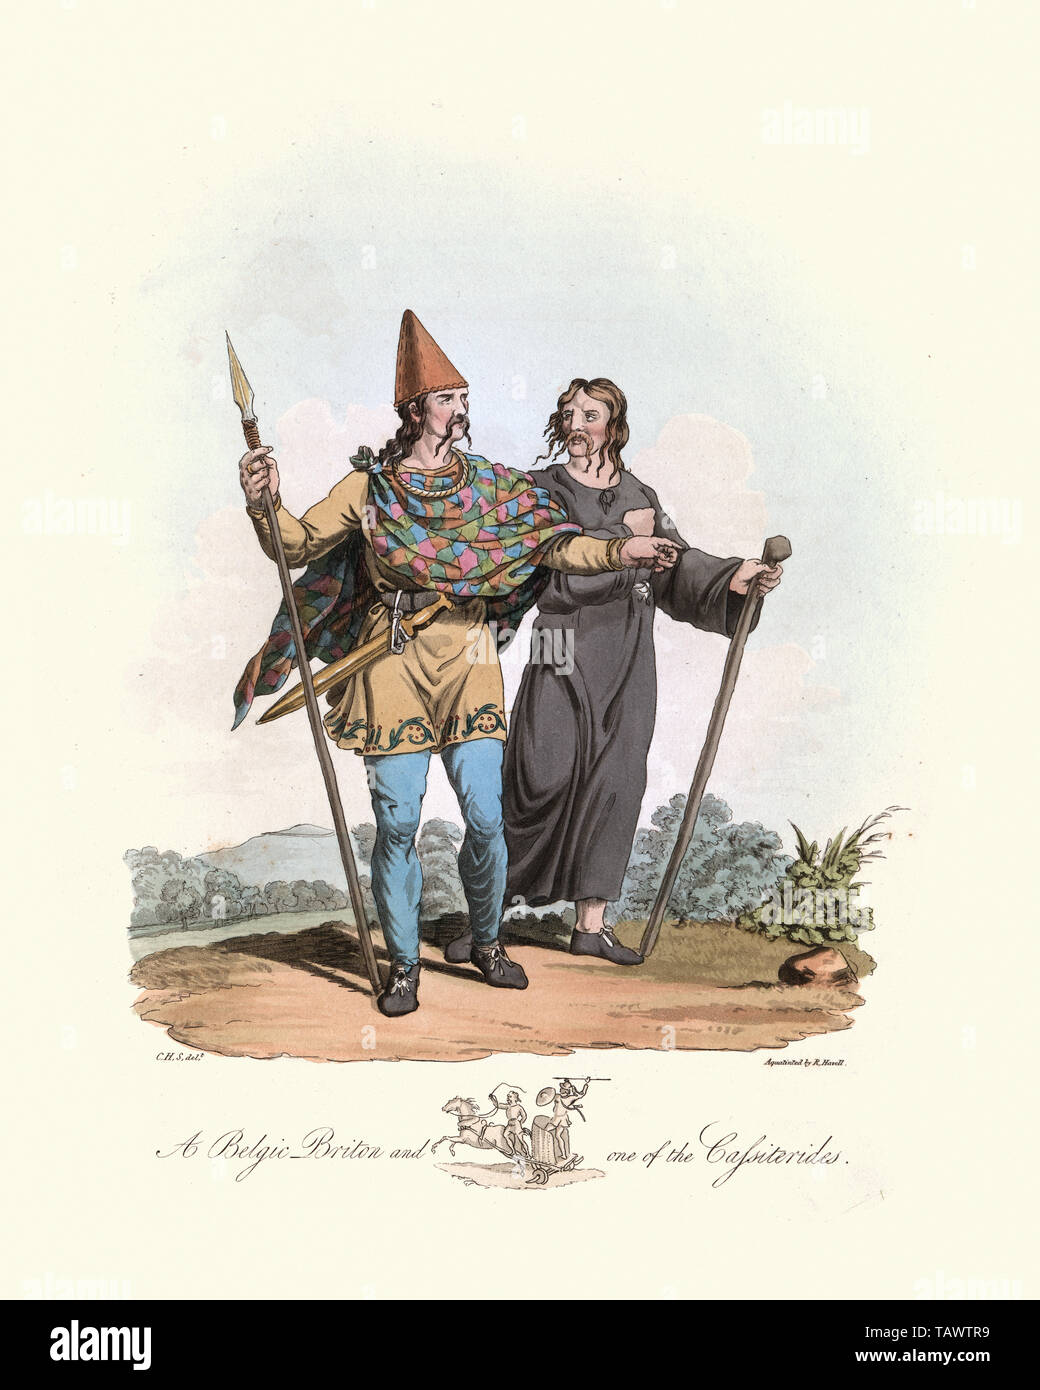 Begic Brite und eine der Cassiterides. 1815, das Kostüm der ursprünglichen Einwohner der Britischen Inseln, von MEYRICK, Samuel Rush und Smith Char Stockfoto